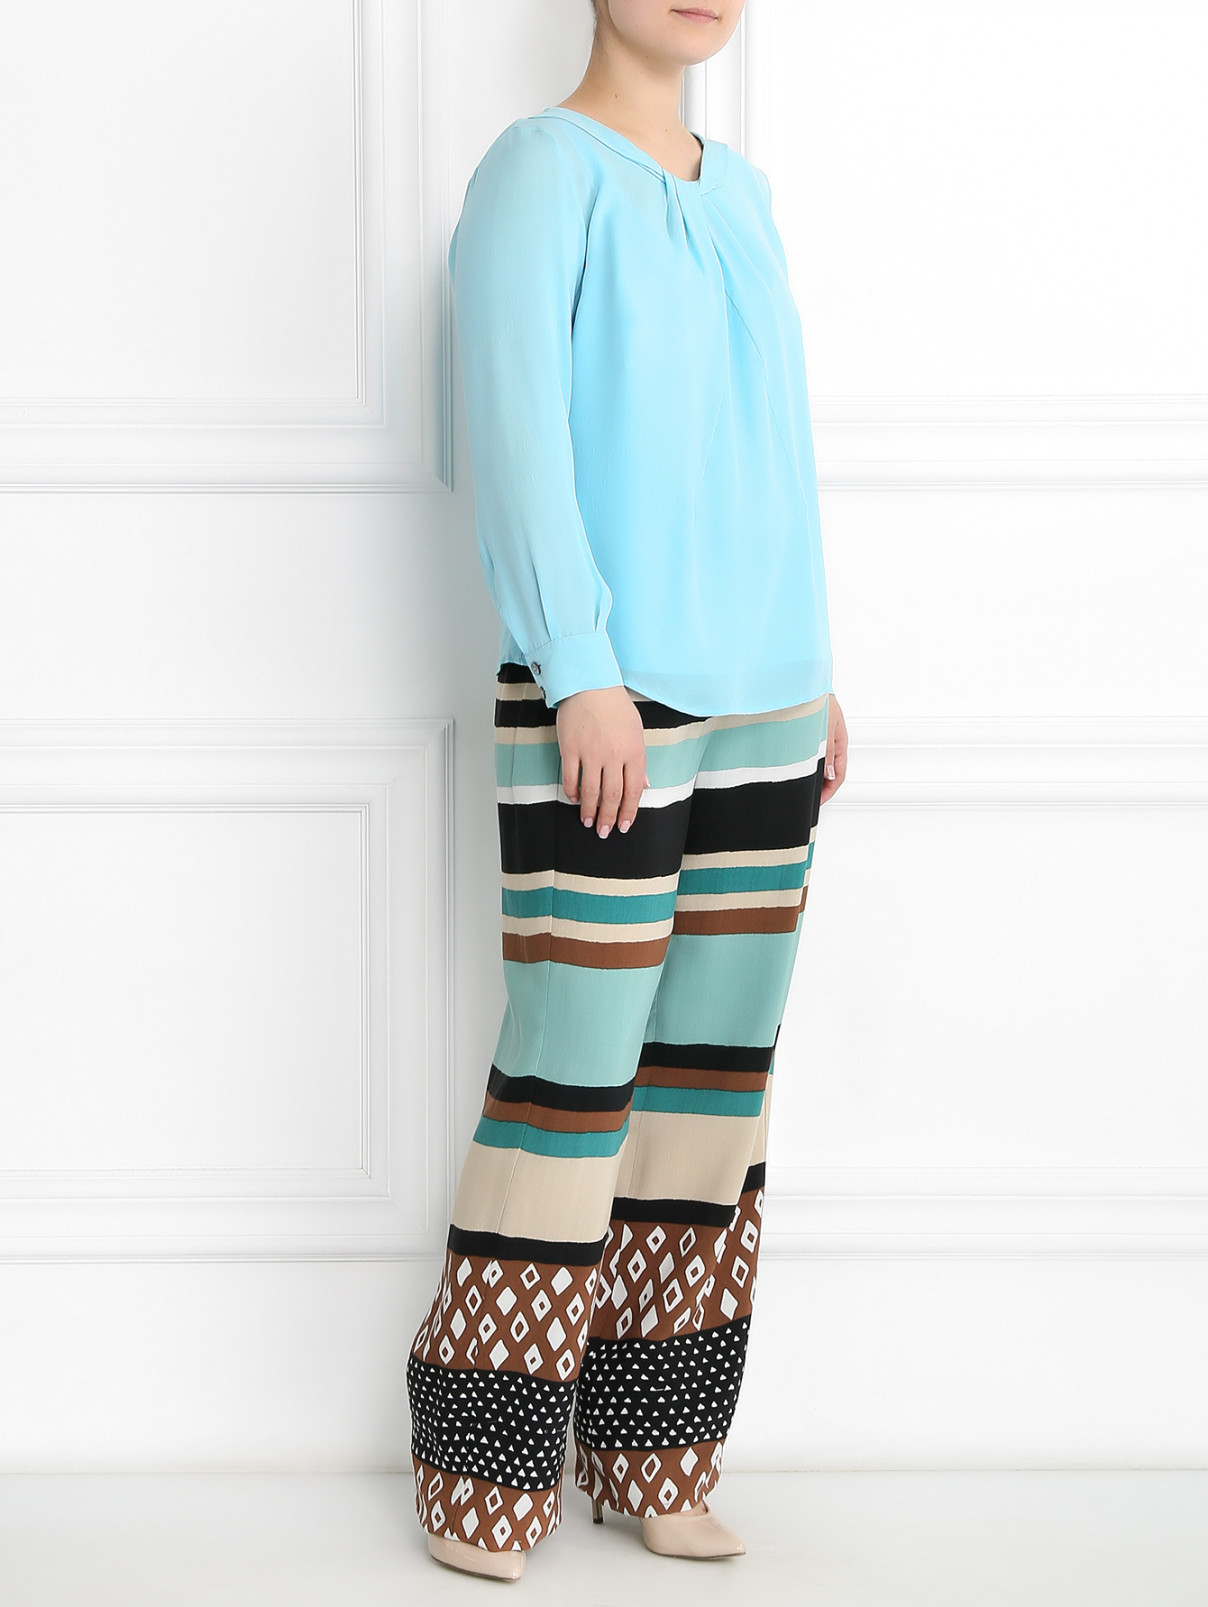 Блуза из шелка с драпировкой Marina Rinaldi  –  Модель Общий вид  – Цвет:  Синий